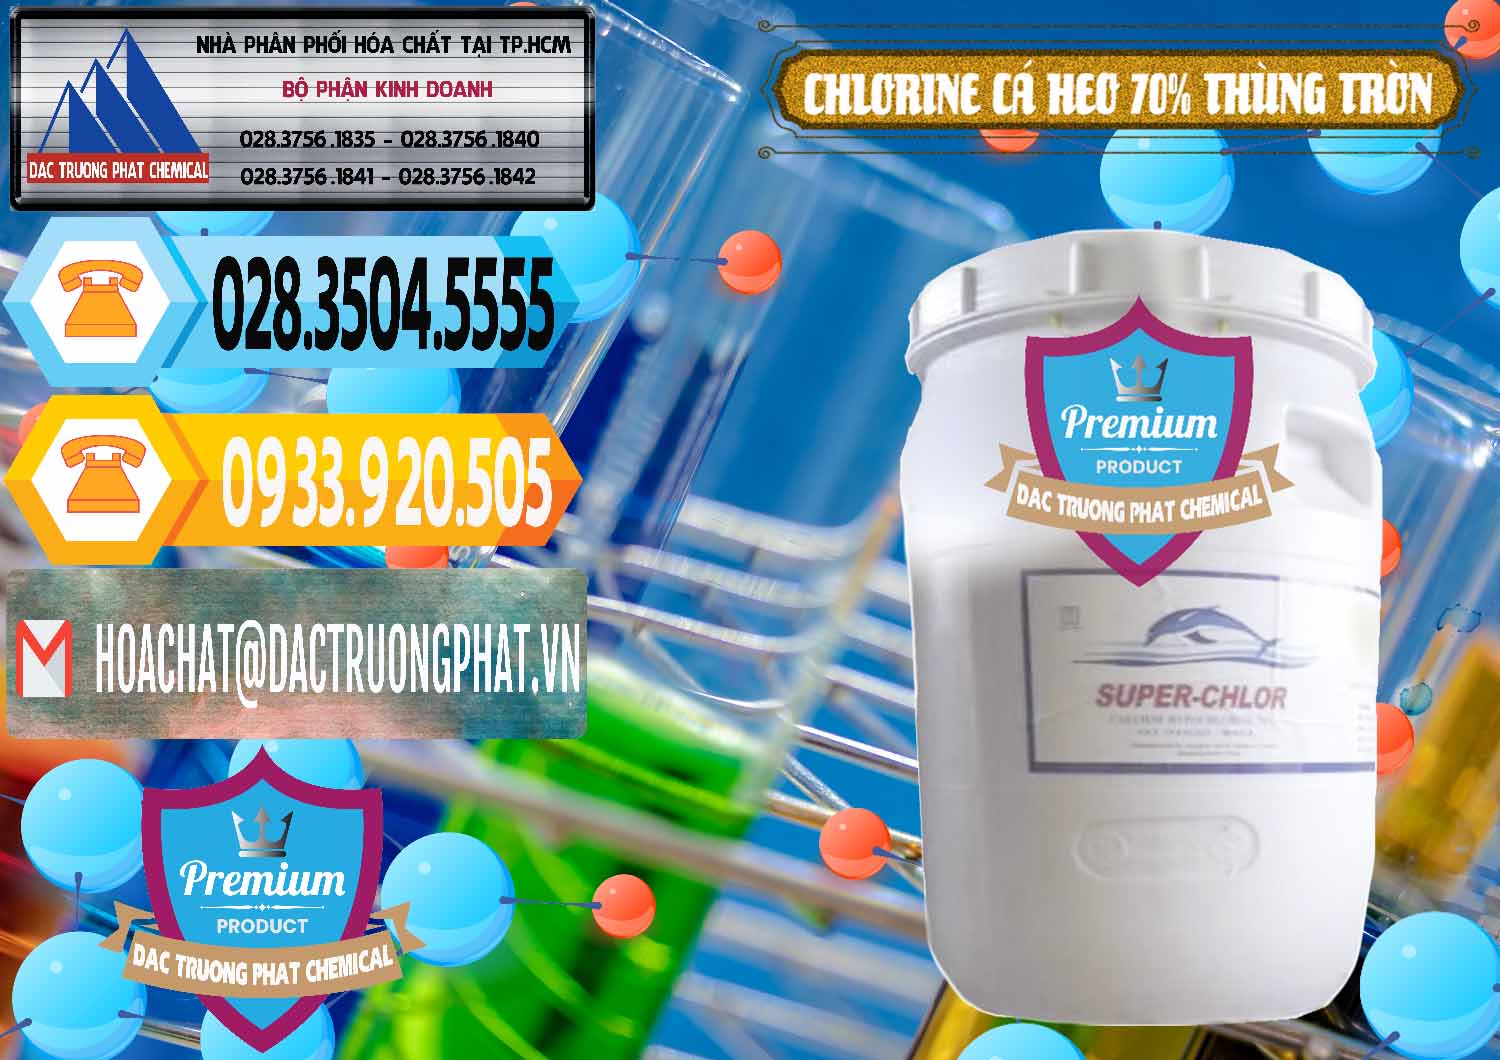 Nơi chuyên cung ứng _ bán Clorin - Chlorine Cá Heo 70% Super Chlor Thùng Tròn Nắp Trắng Trung Quốc China - 0239 - Chuyên cung cấp ( phân phối ) hóa chất tại TP.HCM - hoachattayrua.net